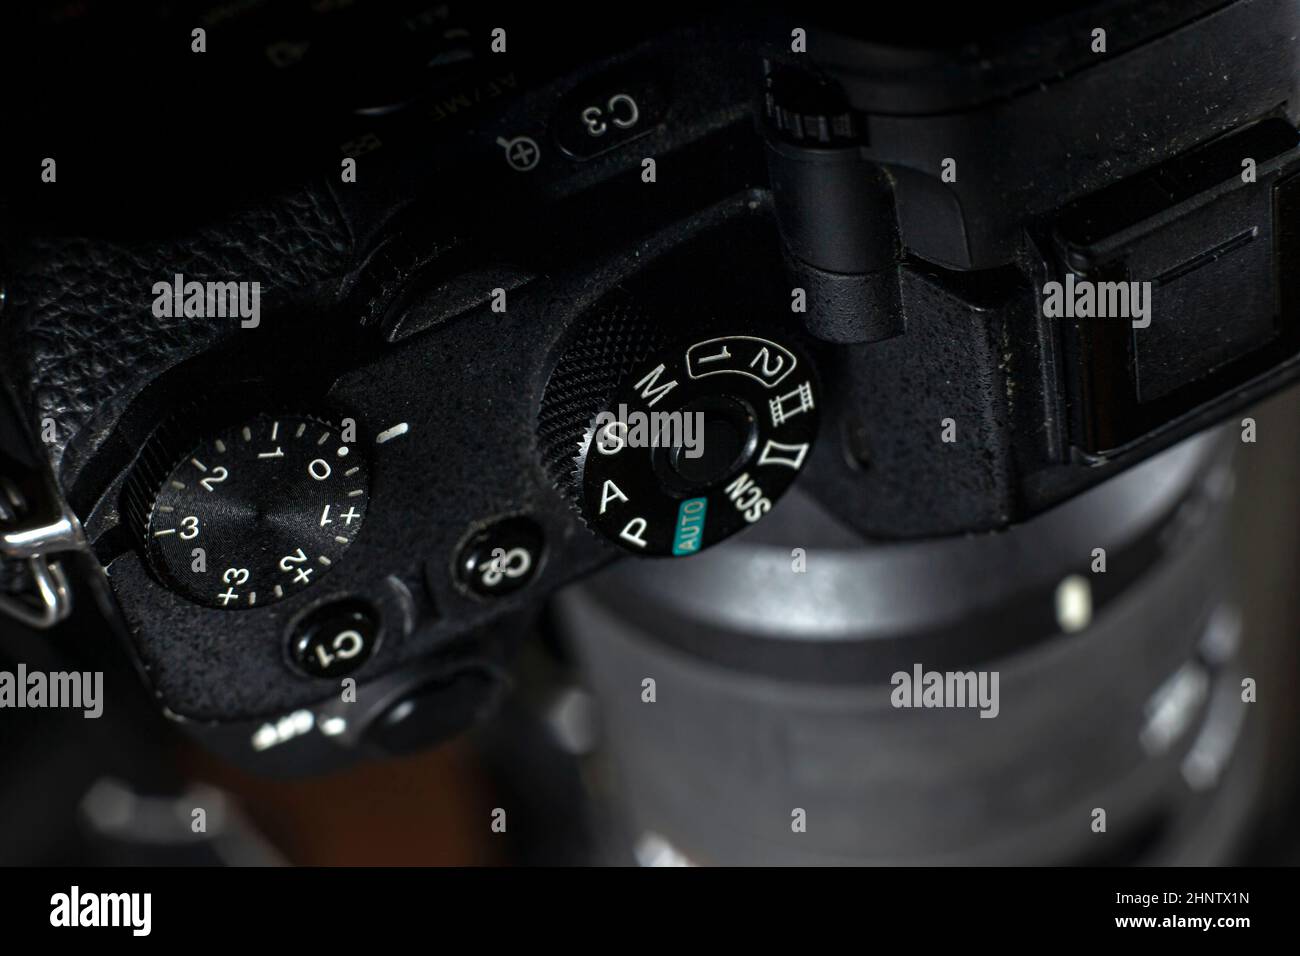 Obturador Marcación rápida de una cámara digital con fondo negro. Foto de stock